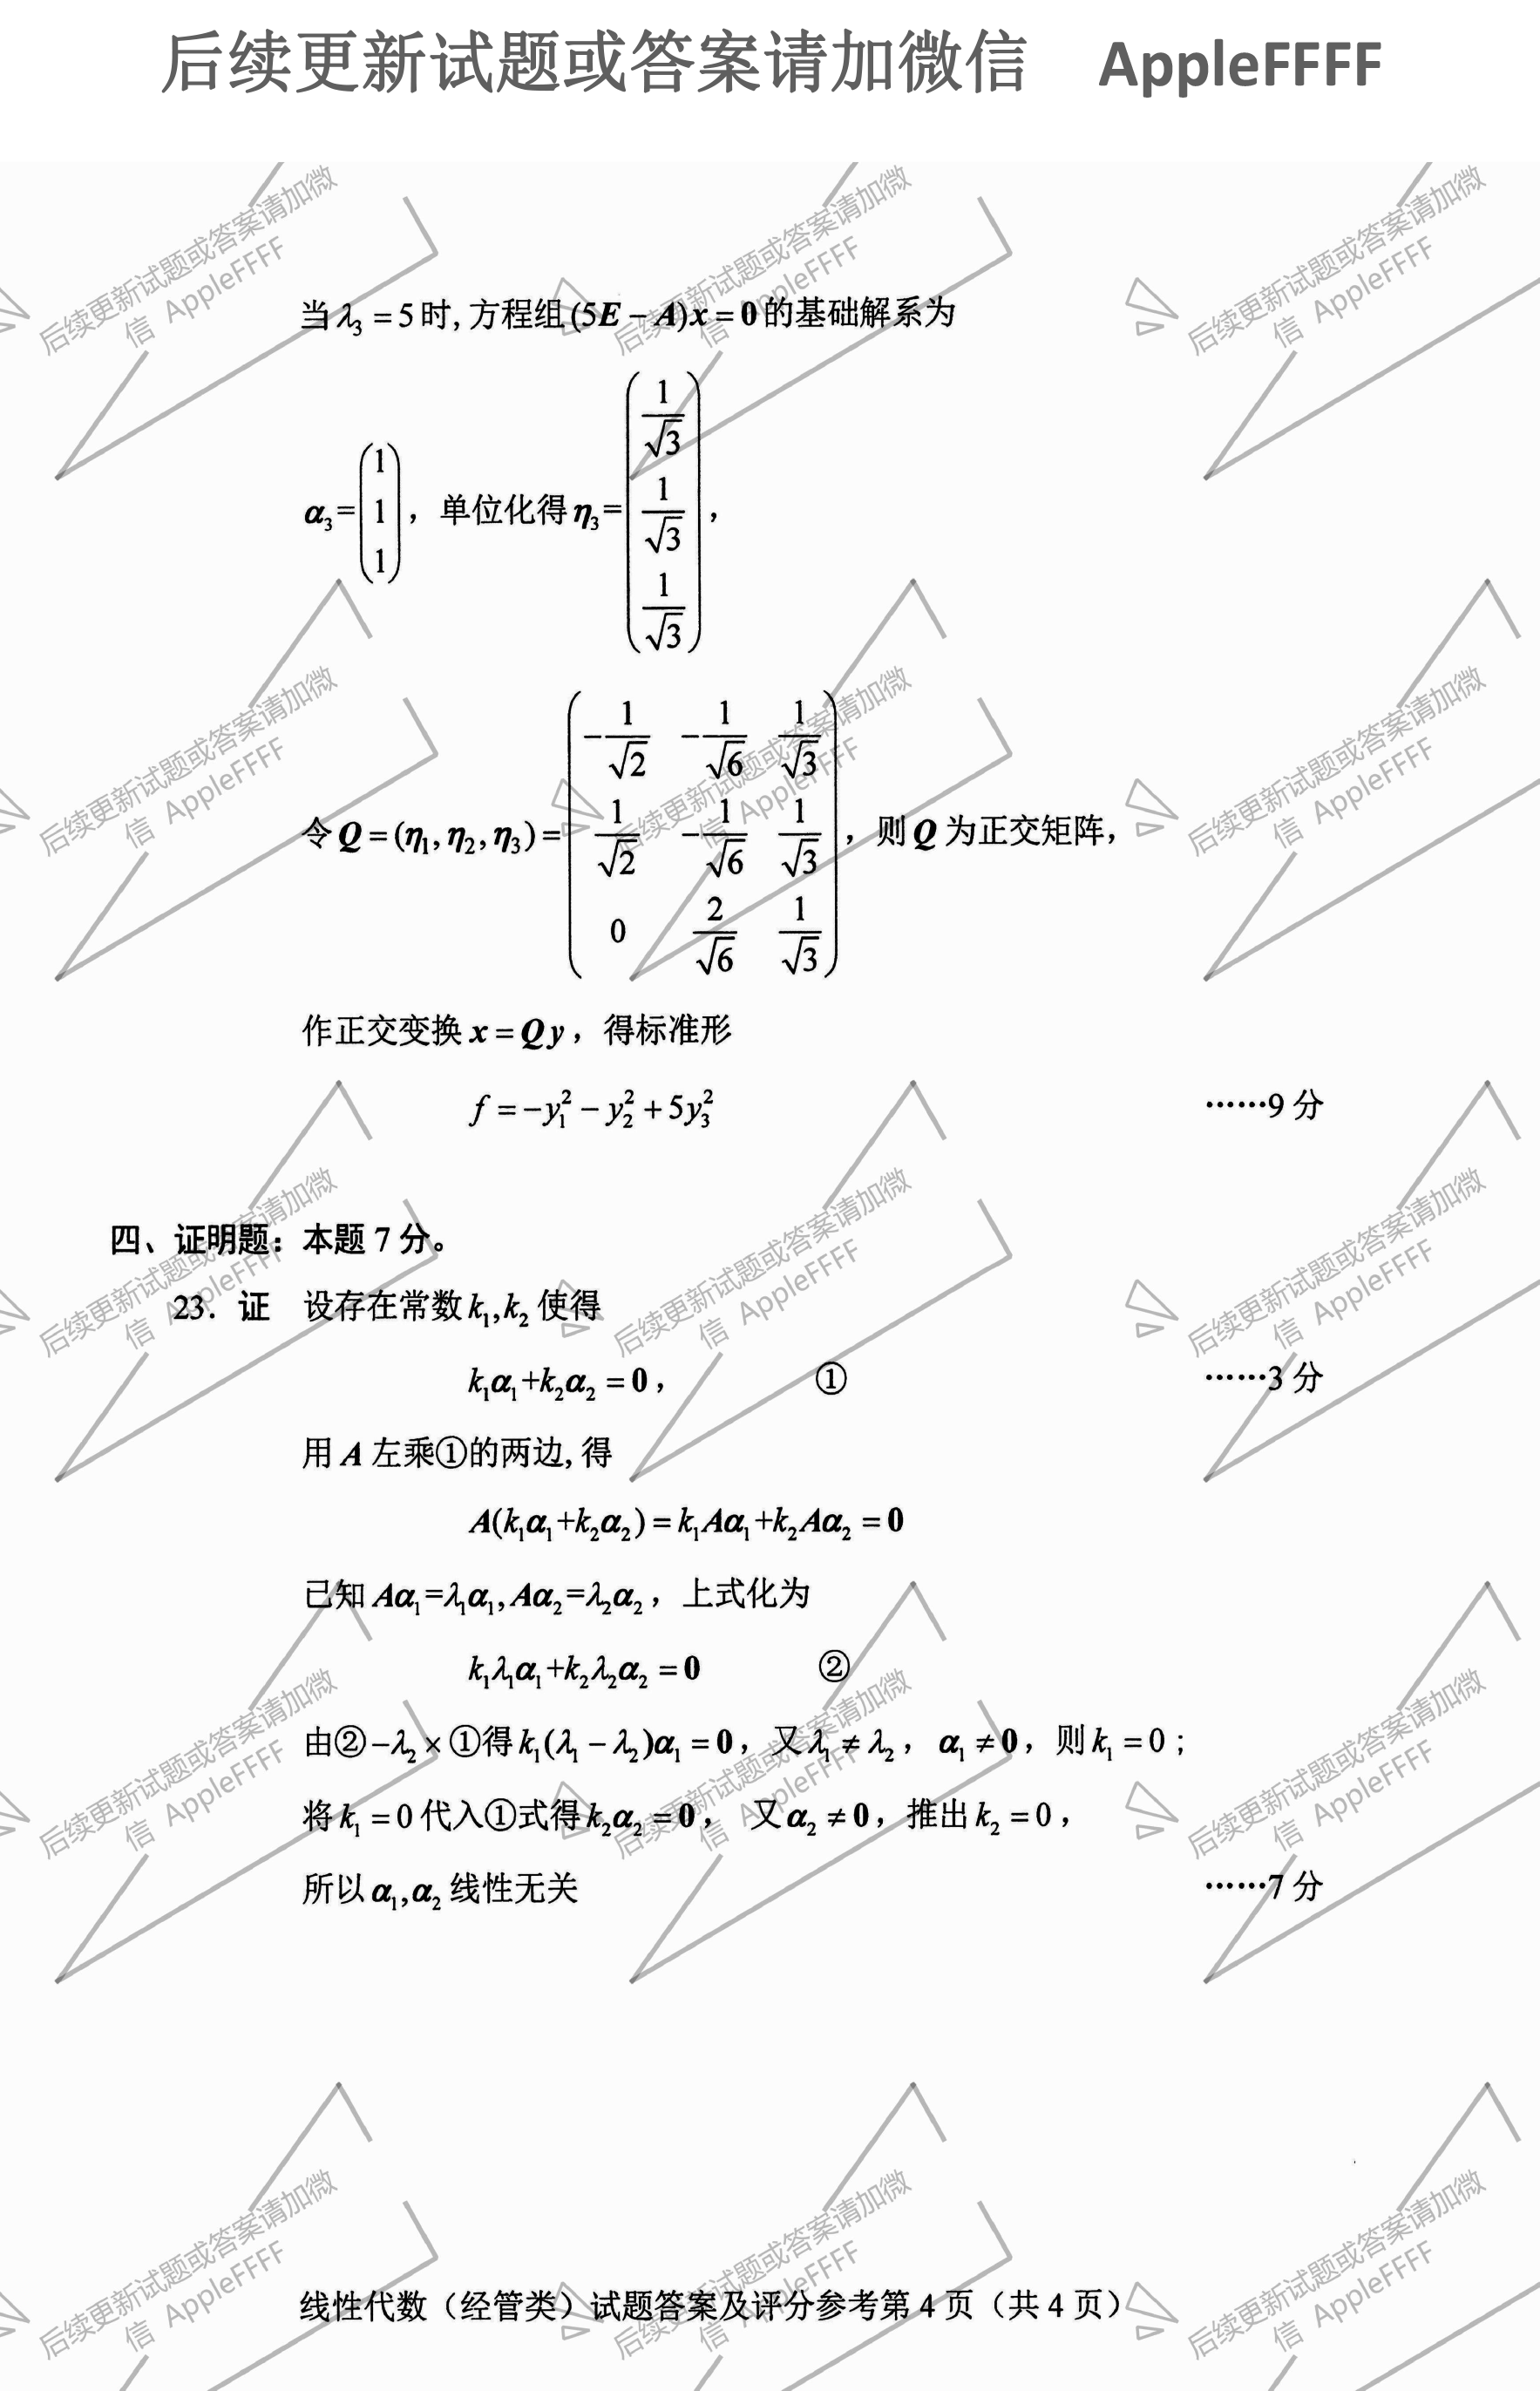 贵州省2021年10月自考04184线性代数(经管类)试题及答案